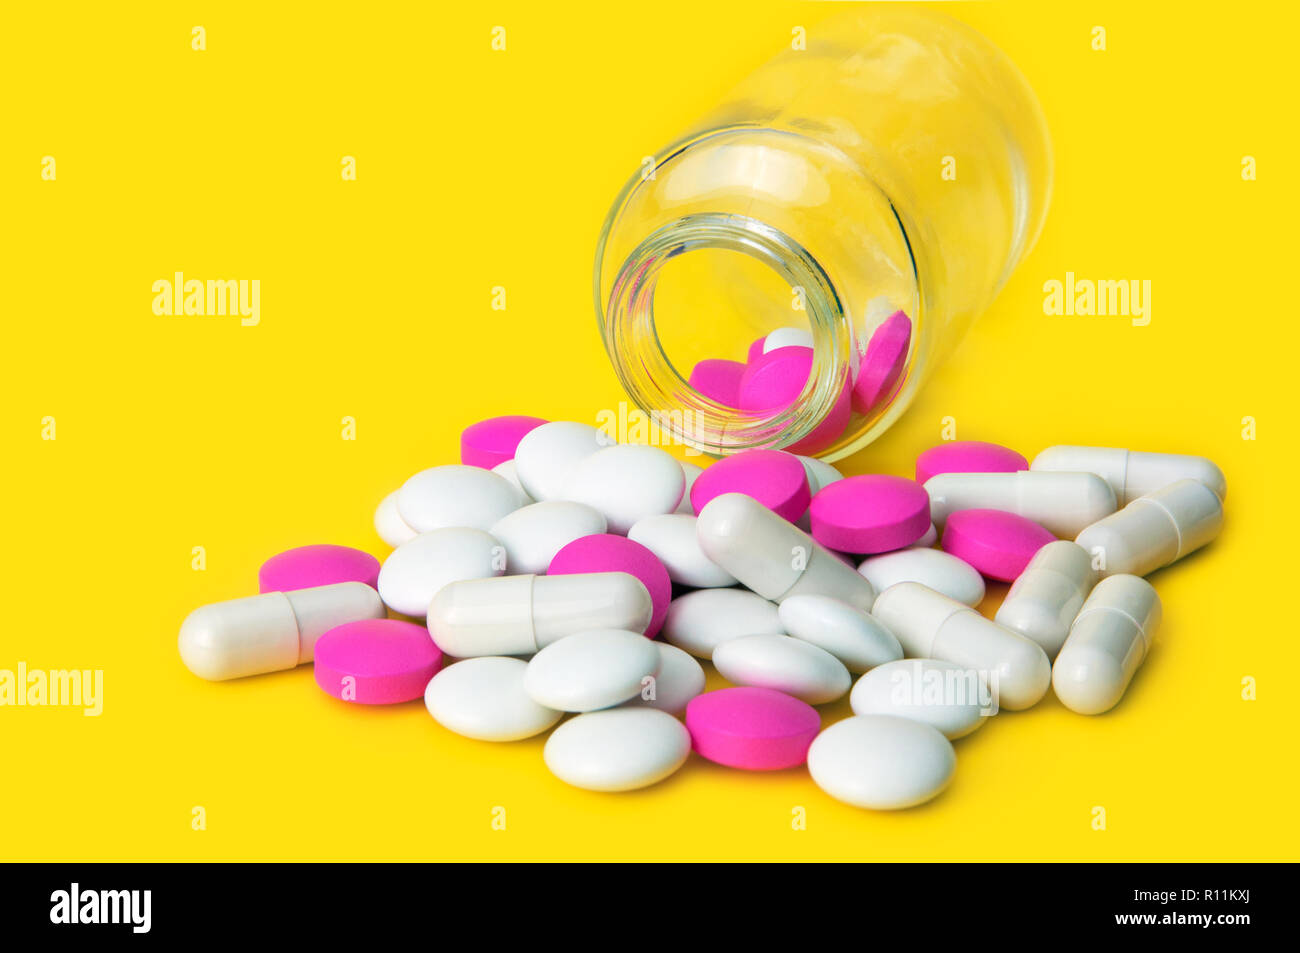 Rosa und weissen Tabletten aus Glas auf einem gelben Hintergrund verstreut. Von der Seite. Stockfoto